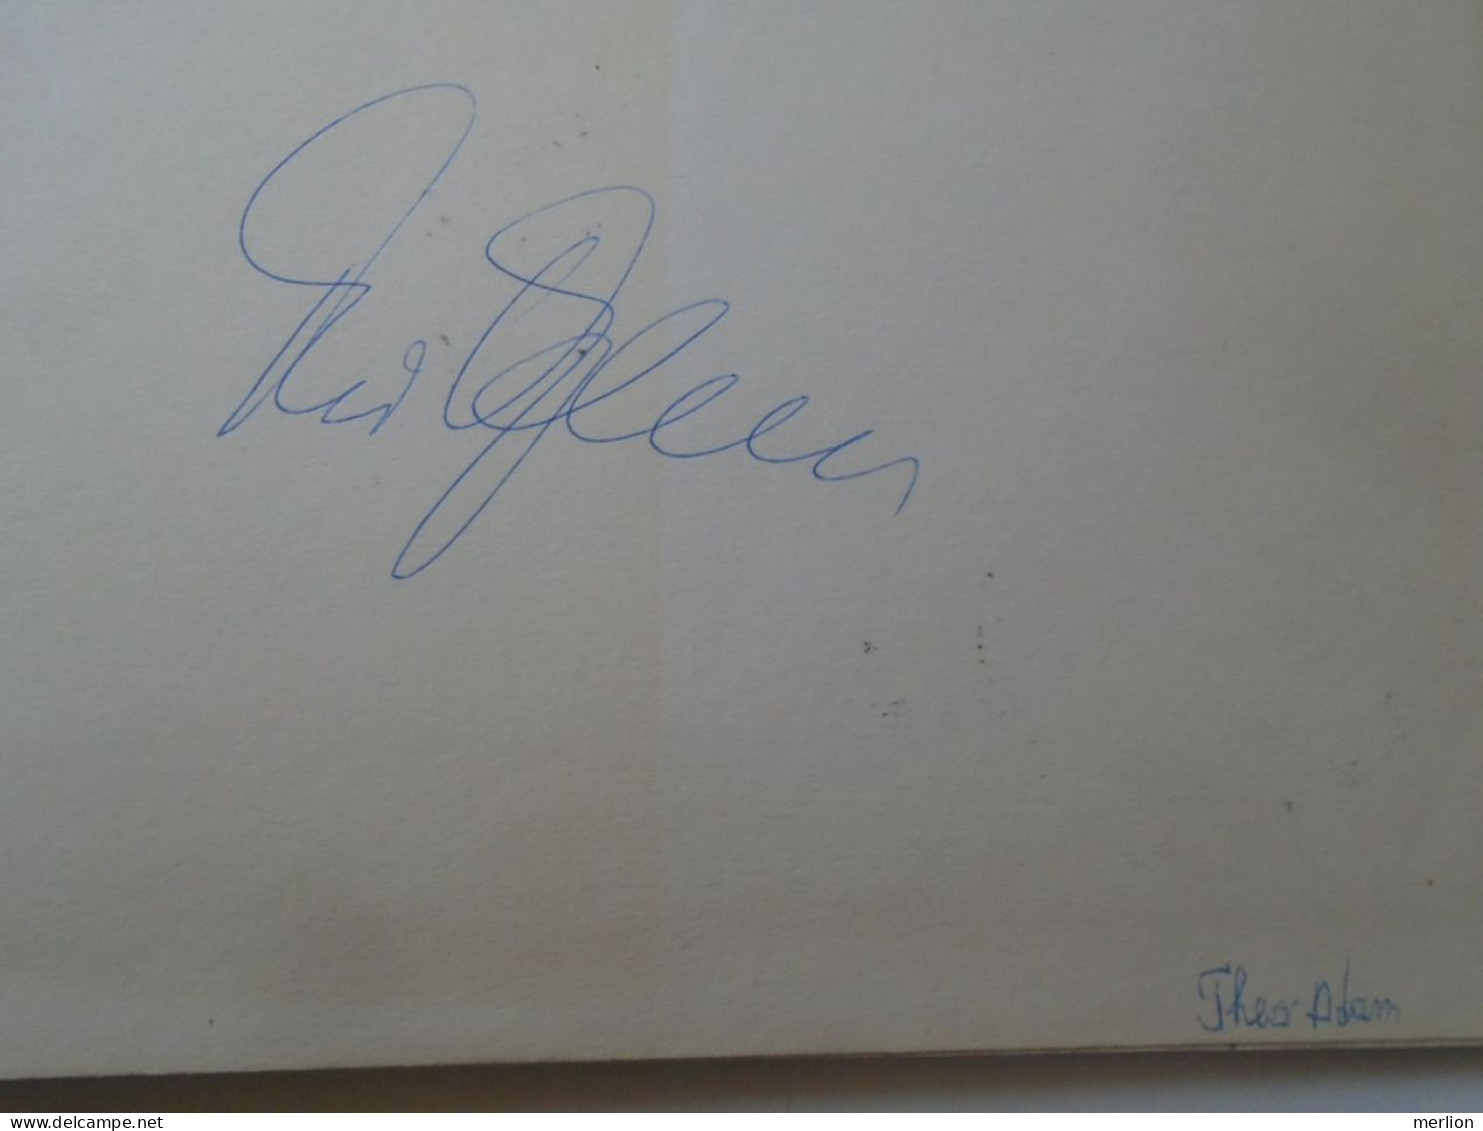 D203351  Signature -Autograph  -   Theo Adam - Opera Singer - Bass Baritone - Wagner, Bayreuth , Saatsoper Dresden  1981 - Chanteurs & Musiciens